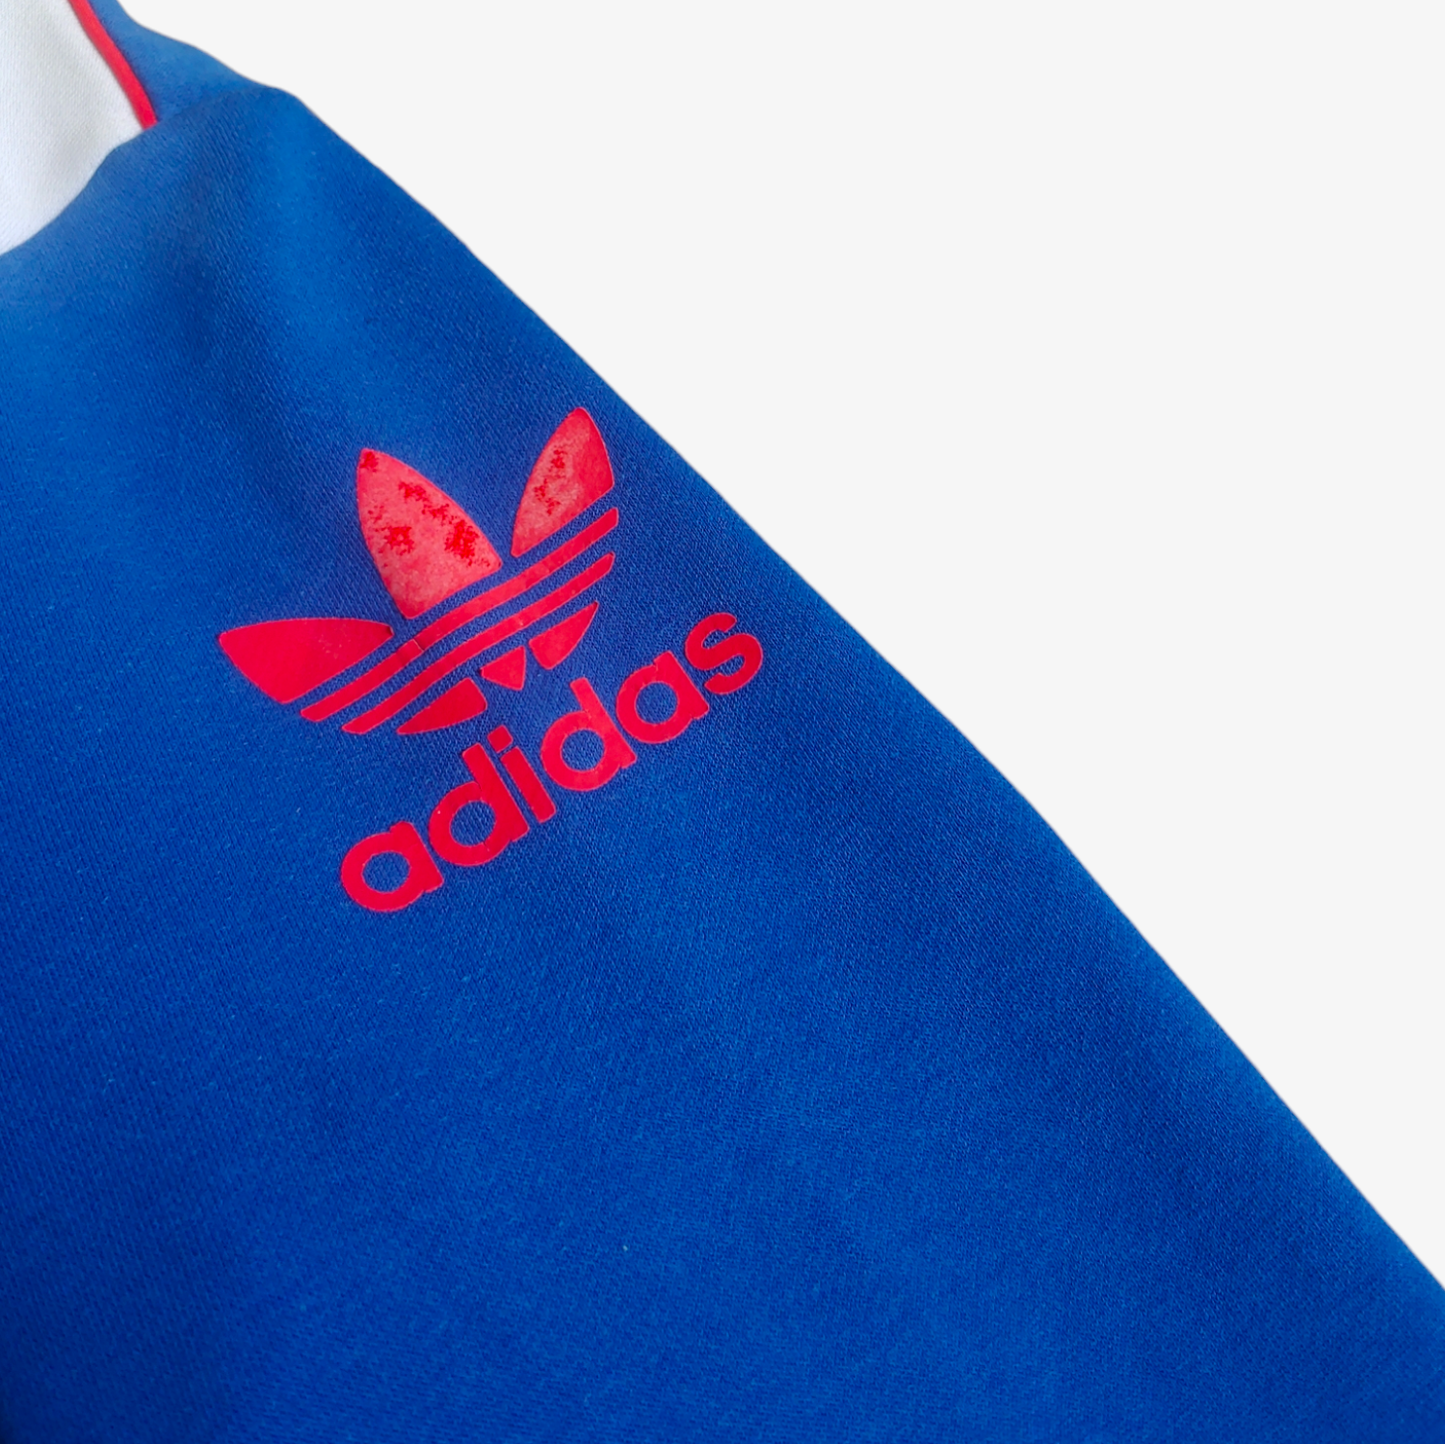 Retro Adidas Originals Manchester United Football Club Blue Crewneck Sweatshirt Logo - Casspios Dream